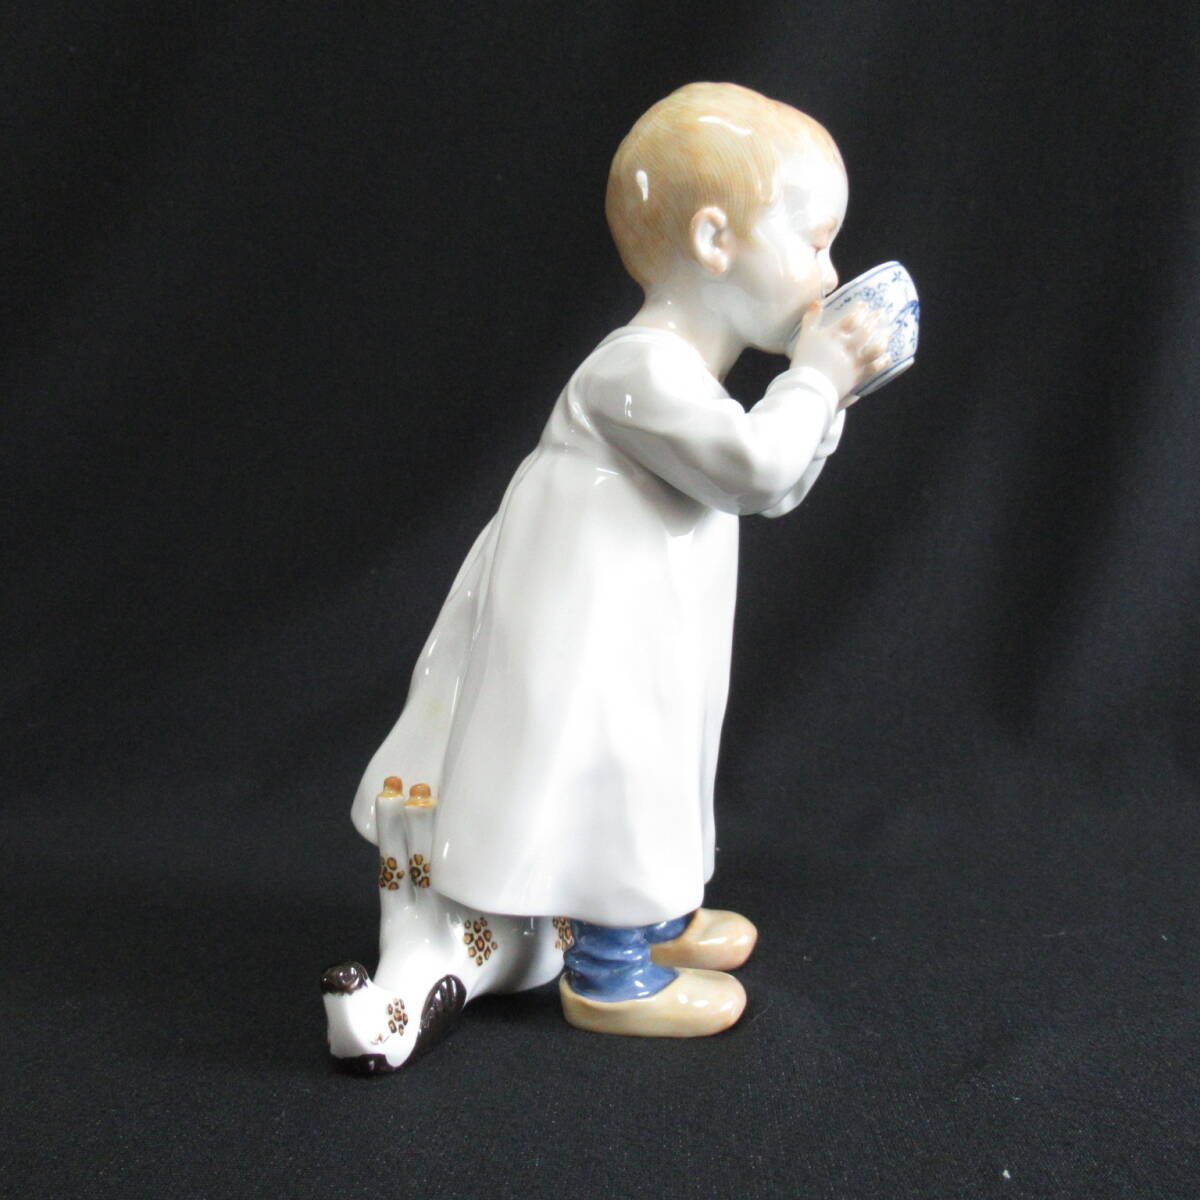 マイセン ヘンチェル人形 ブルーオニオンのカップを持った男の子 フィギュリン Meissen アンティーク 60サイズ発送 w-2607932-127-mrrzの画像4